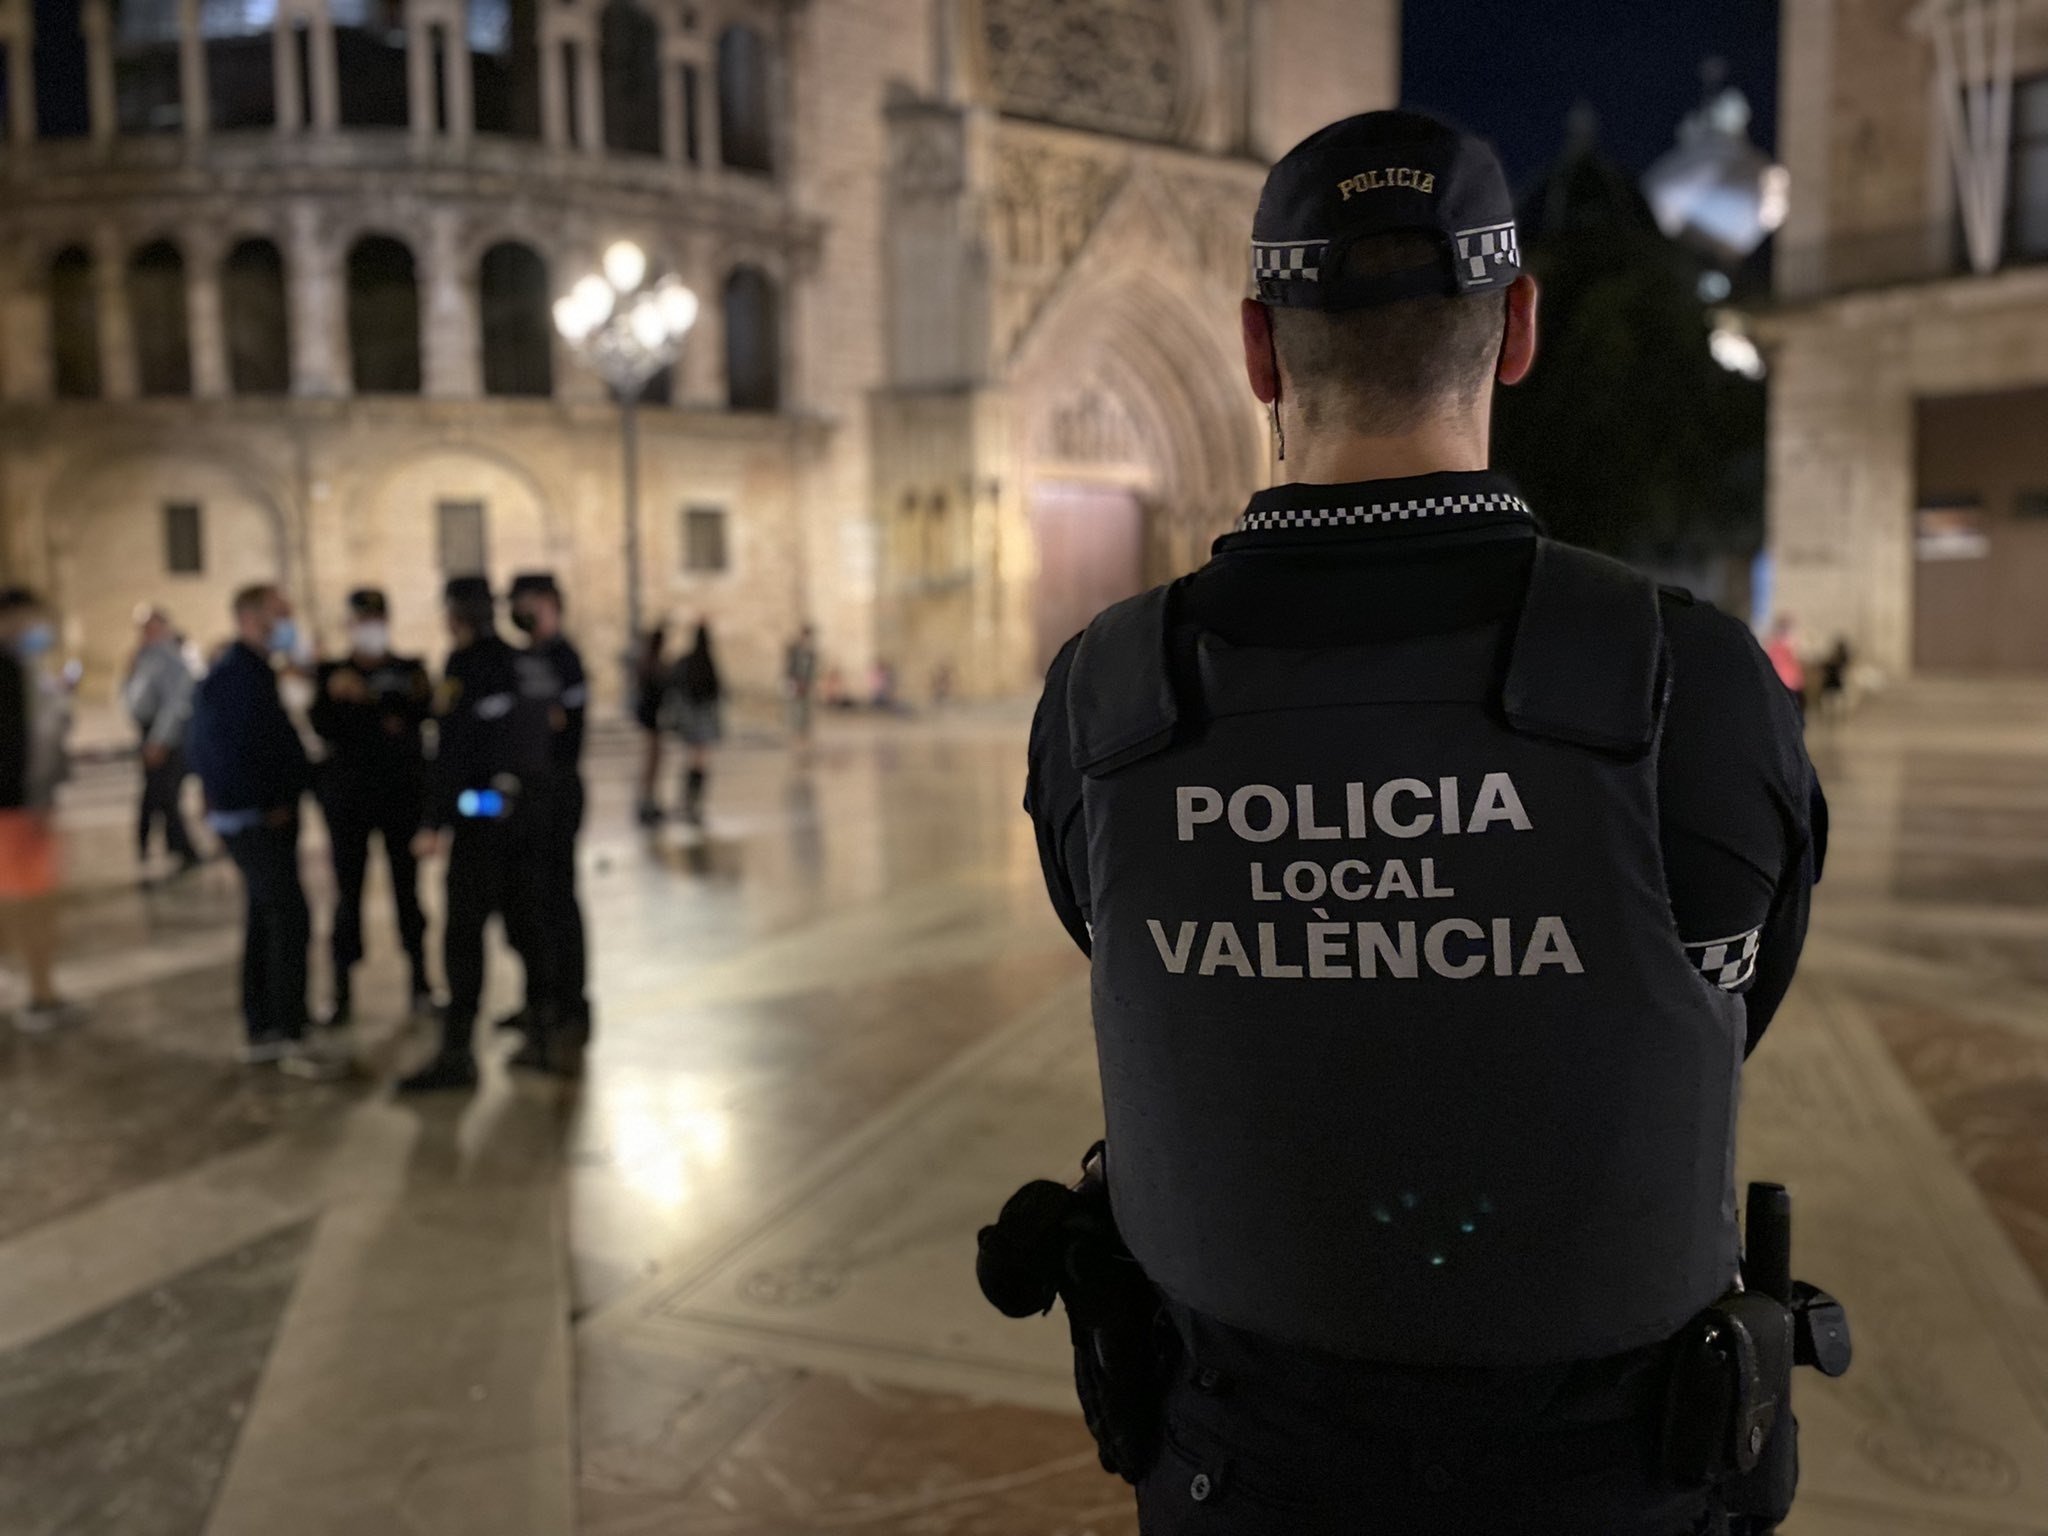 EuropaPress agent policia local valencia